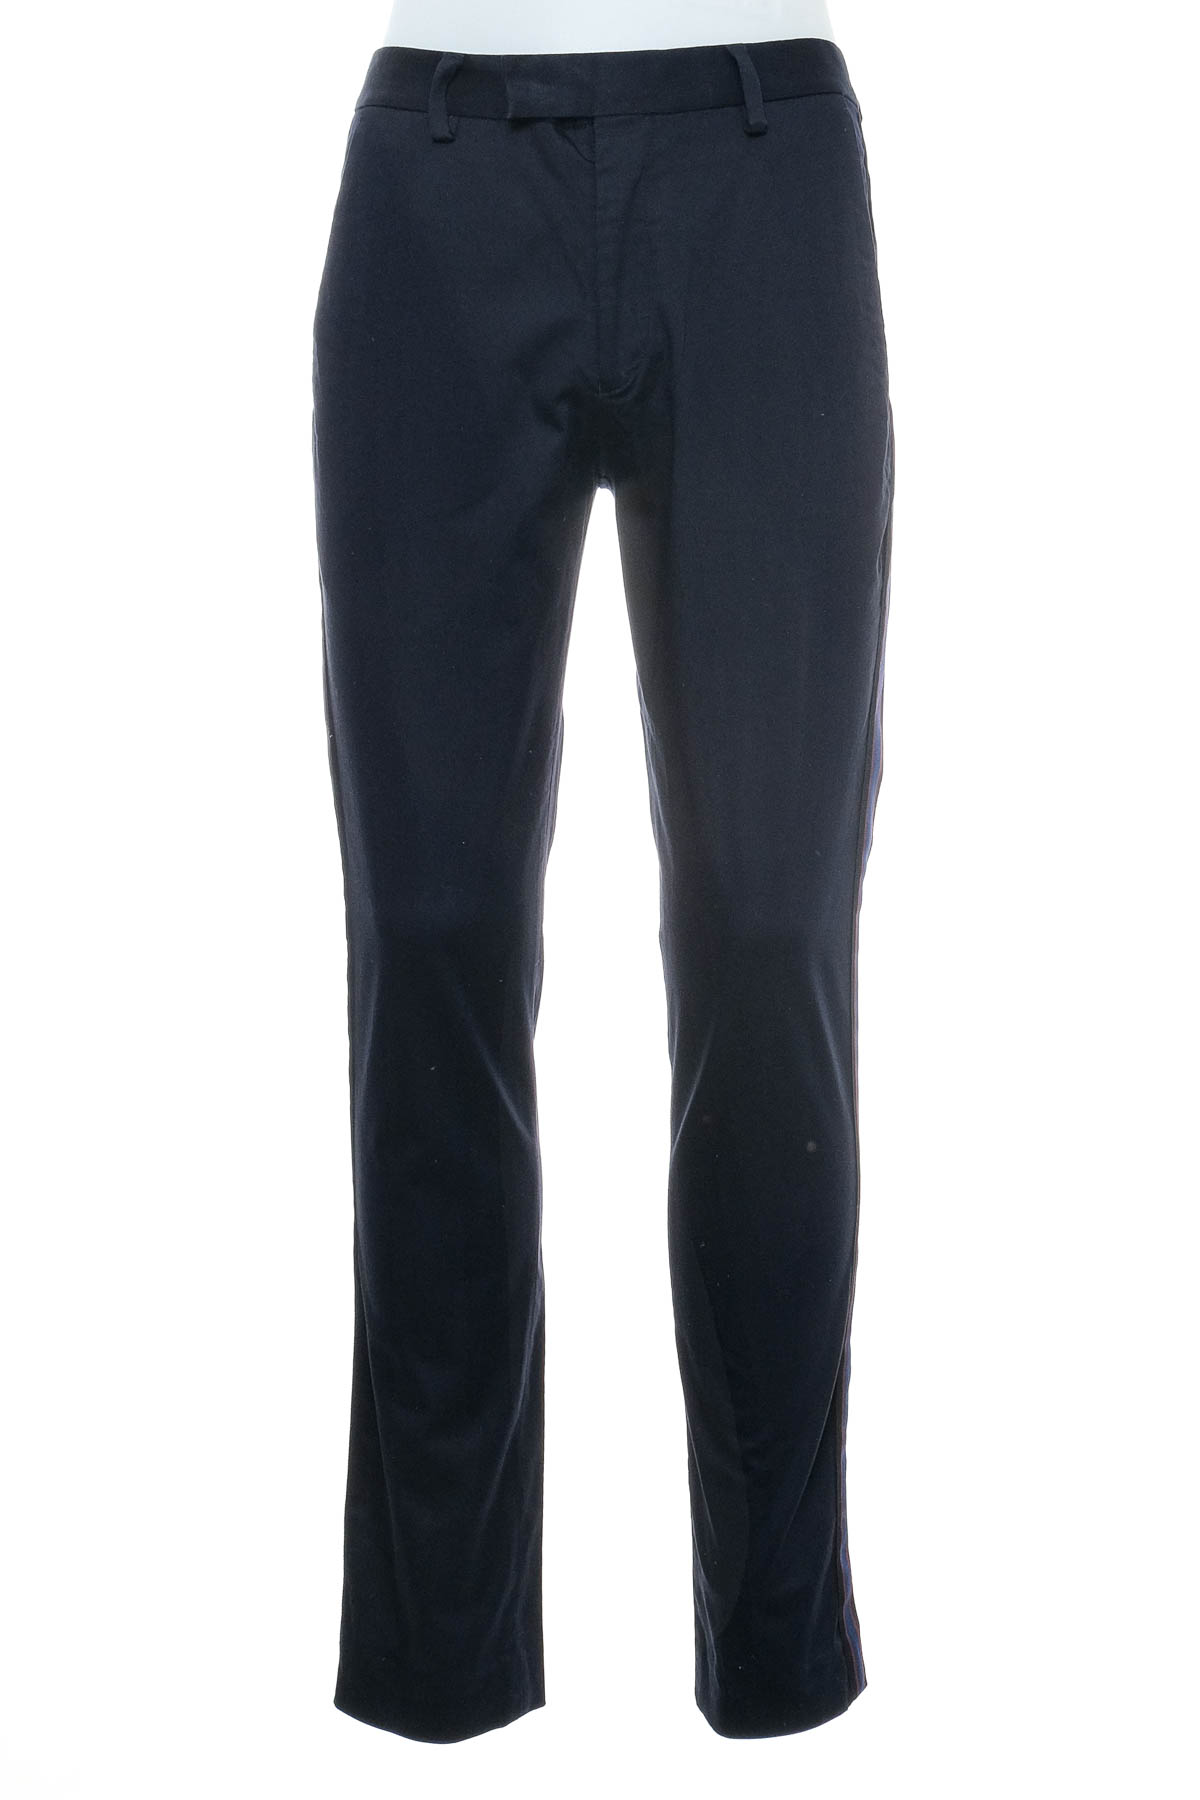 Pantalon pentru bărbați - RIVER ISLAND - 0